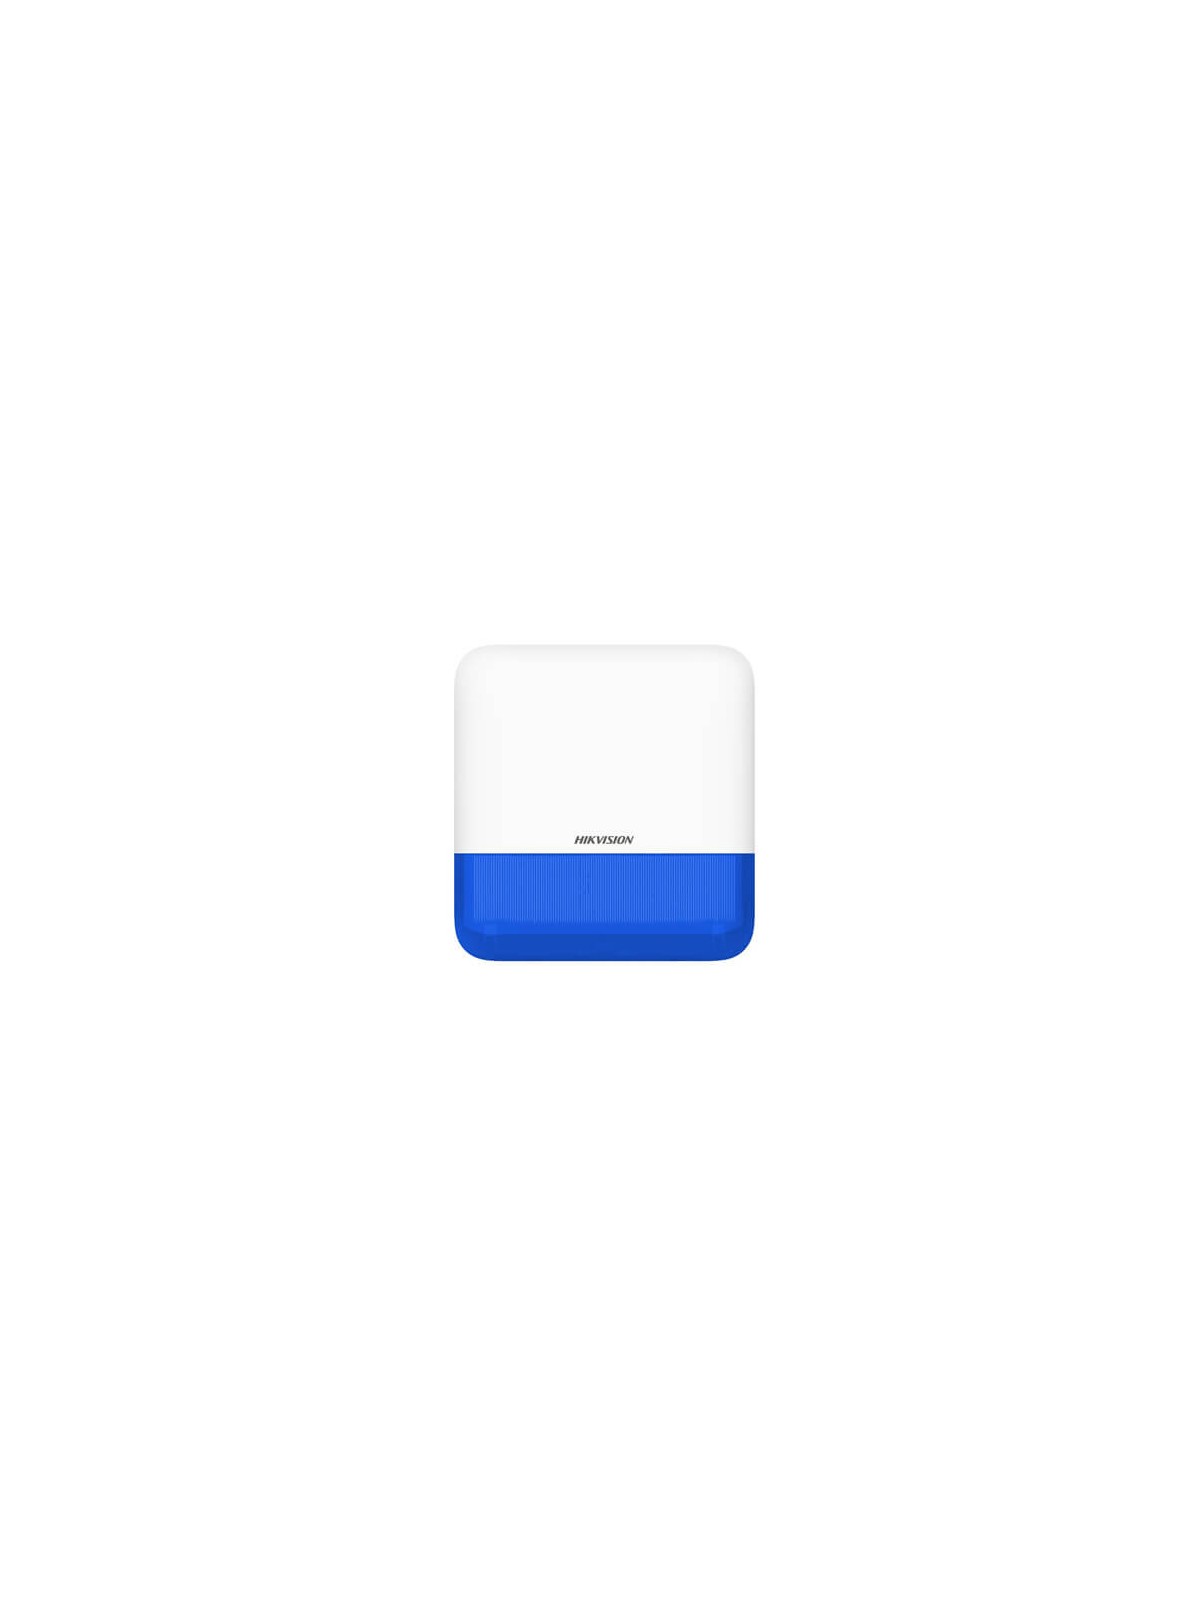 Sirena Hikvision AXPRO DS-PS1-E-WE para exterior (110db) con luz azul